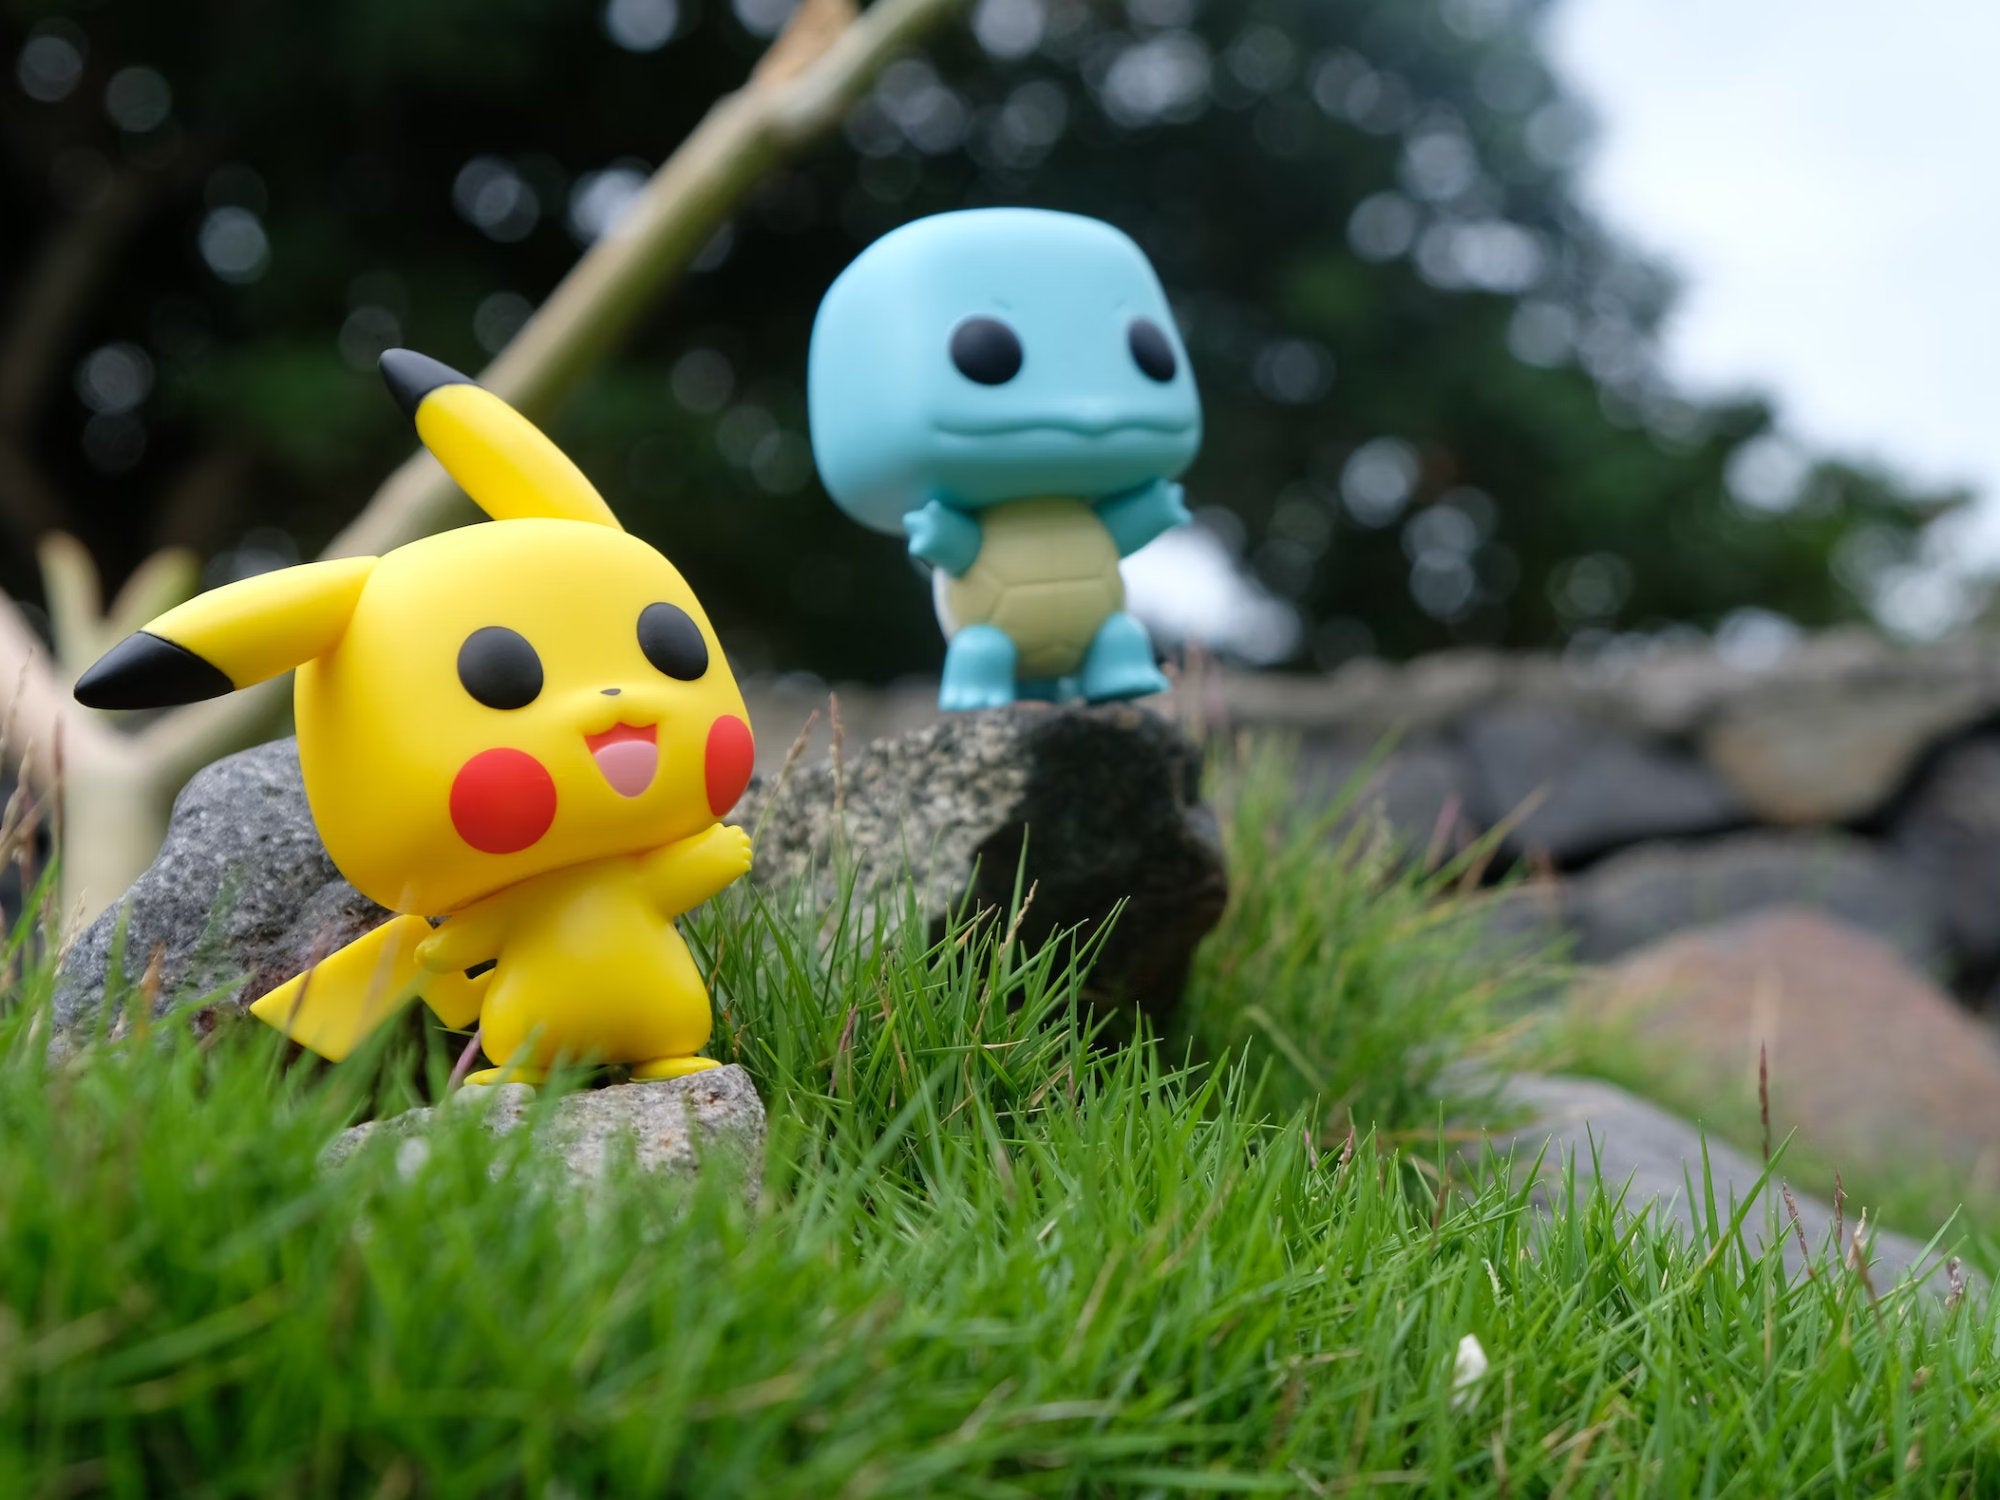 #Verbraucherschützer warnen vor Pokémon: Diese App ist nichts für Kinder